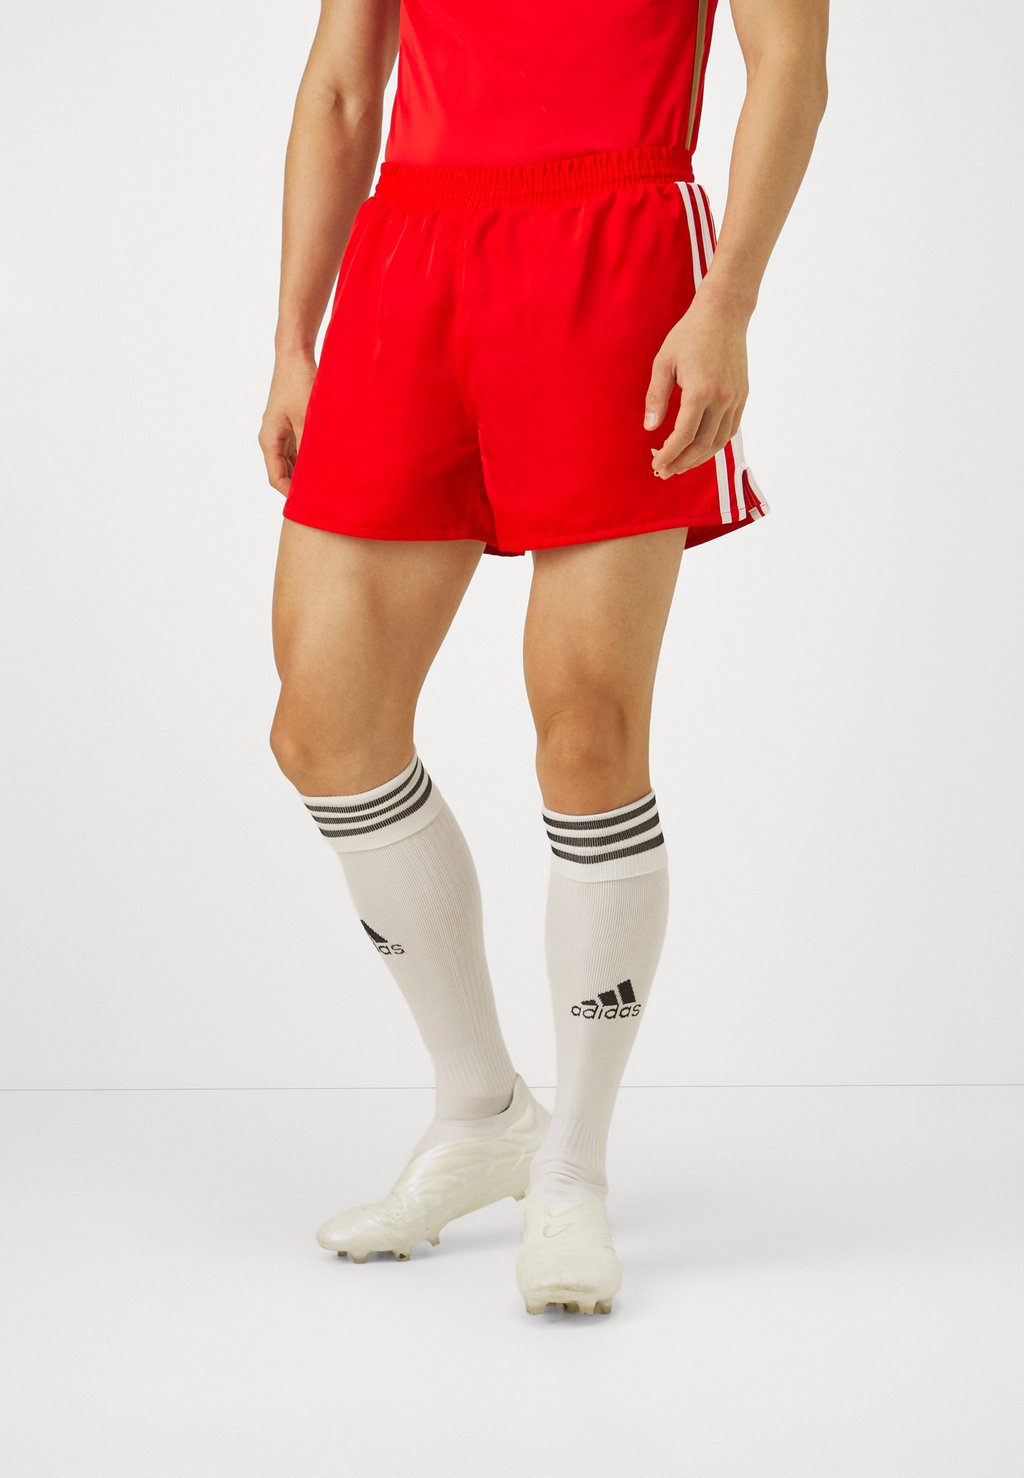 Спортивные шорты Fc Bayern München adidas Originals, красный